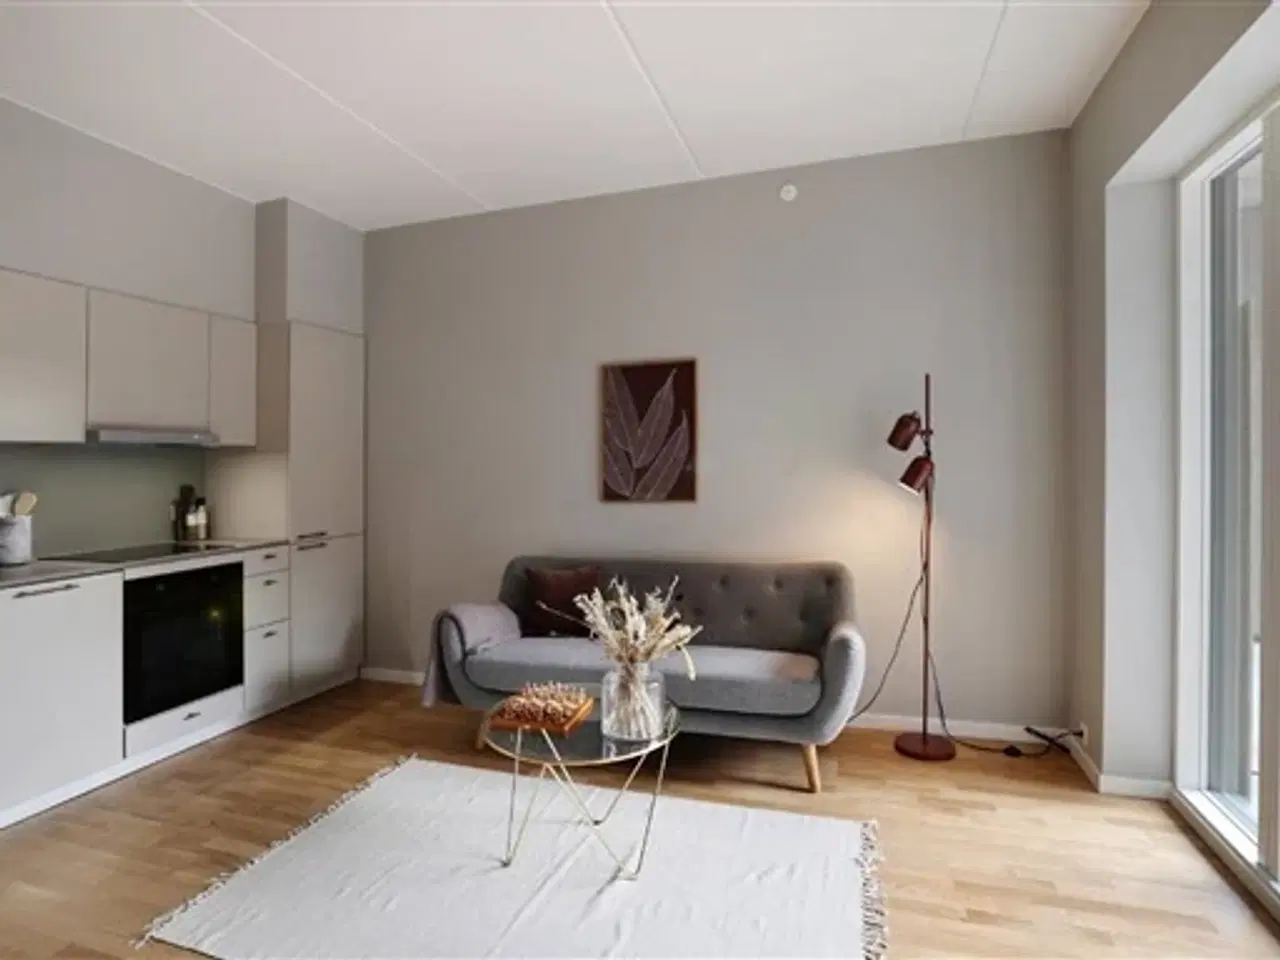 Billede 1 - 2 vær bolig i UN17 Lunden - et bofællesskab for dig over 40 år - Hyggelig stue og køkken-alrum s...